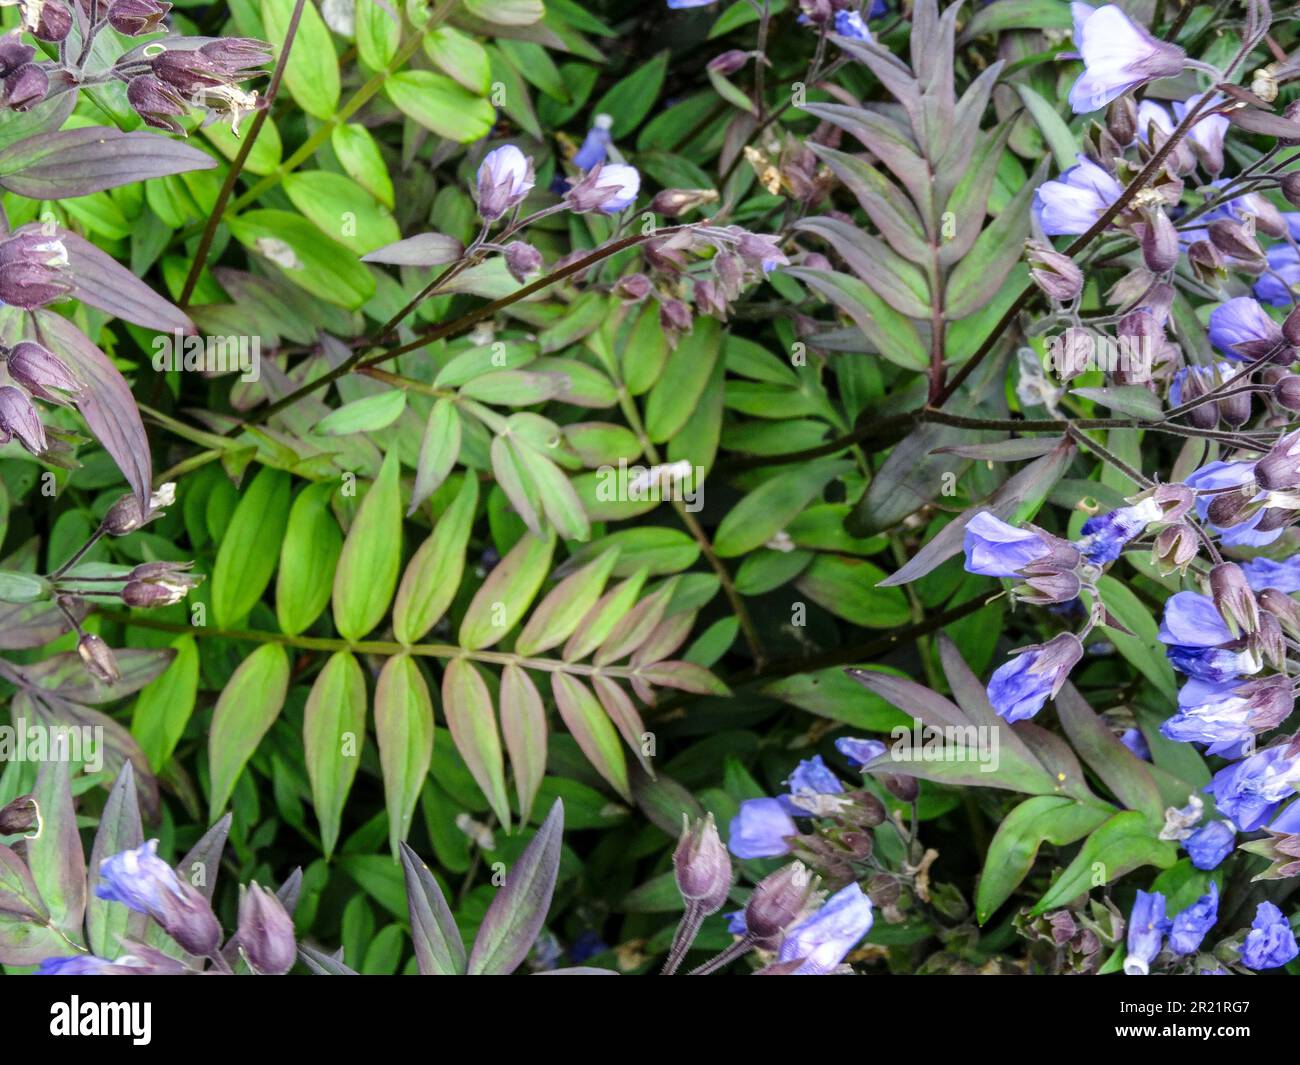 Close up natural flowering plant portrait of Polemonium - Heaven Scent Stock Photo